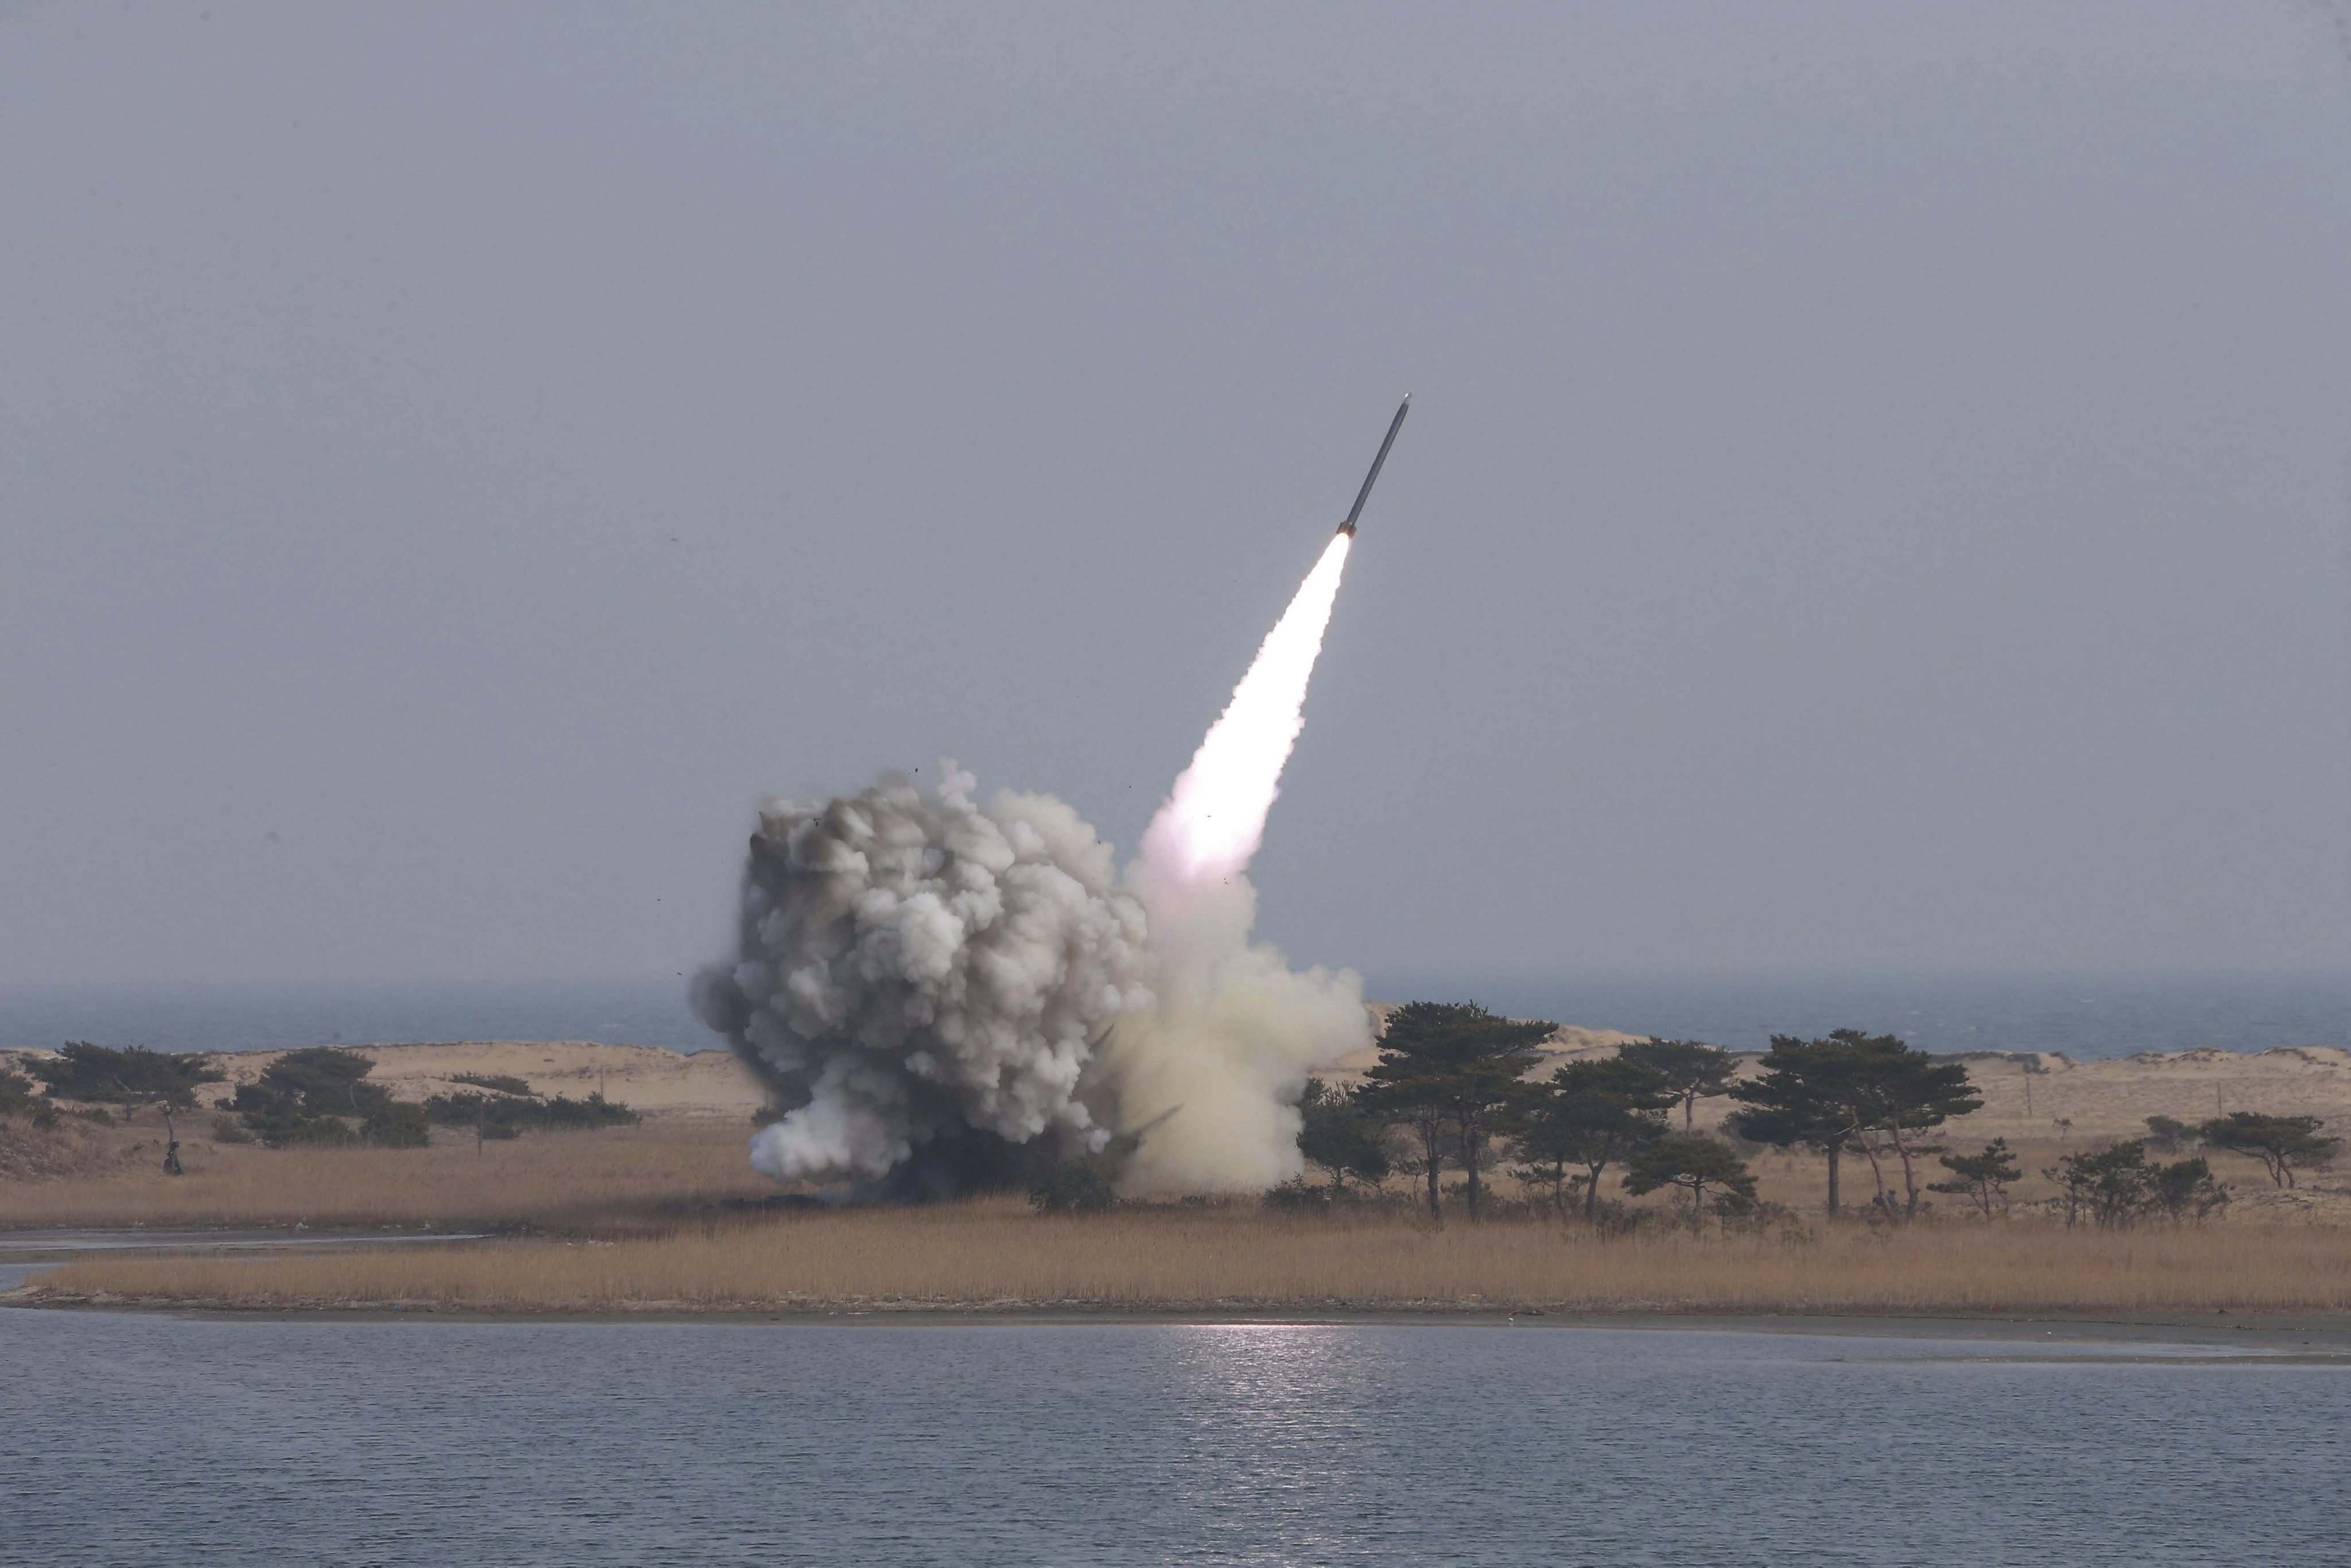 Fotografía facilitada por la agencia de noticias norcoreana KCNA que muestra las pruebas de lanzamiento de un sistema de lanzamisiles múltiple de largo calibre efectuado por Corea del Norte el pasado fin de semana. EFE/KCNA/Archivo
